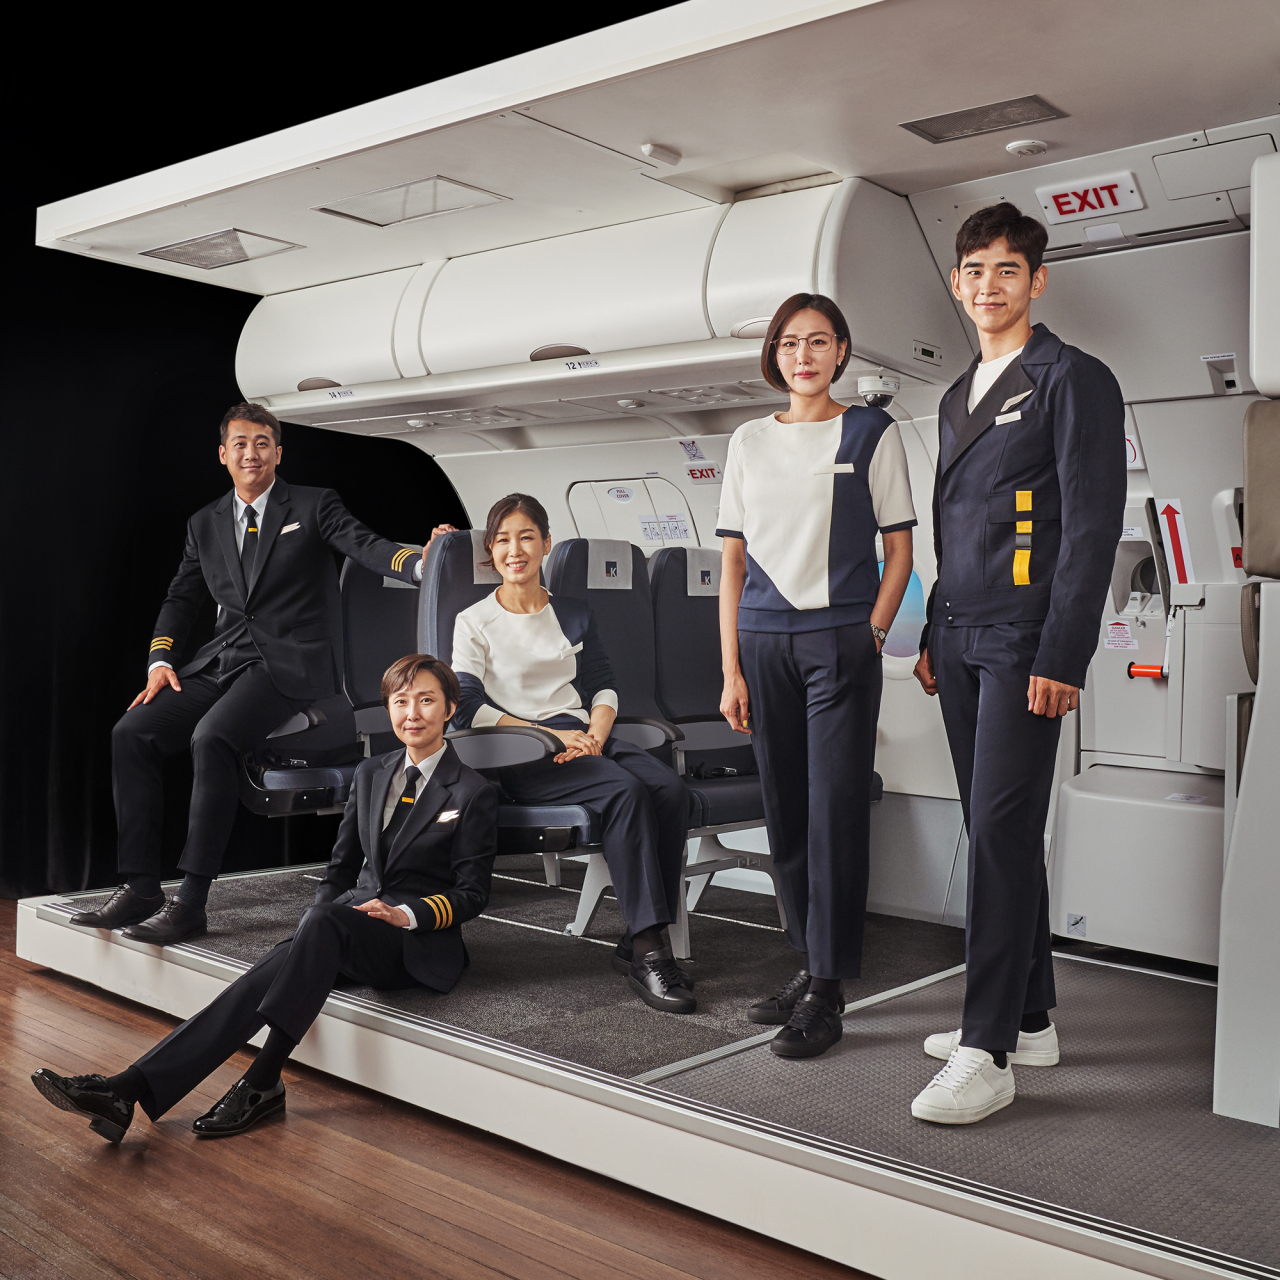 Aero K staff wear the airline‘s gender-neutral uniforms. (Aero K)